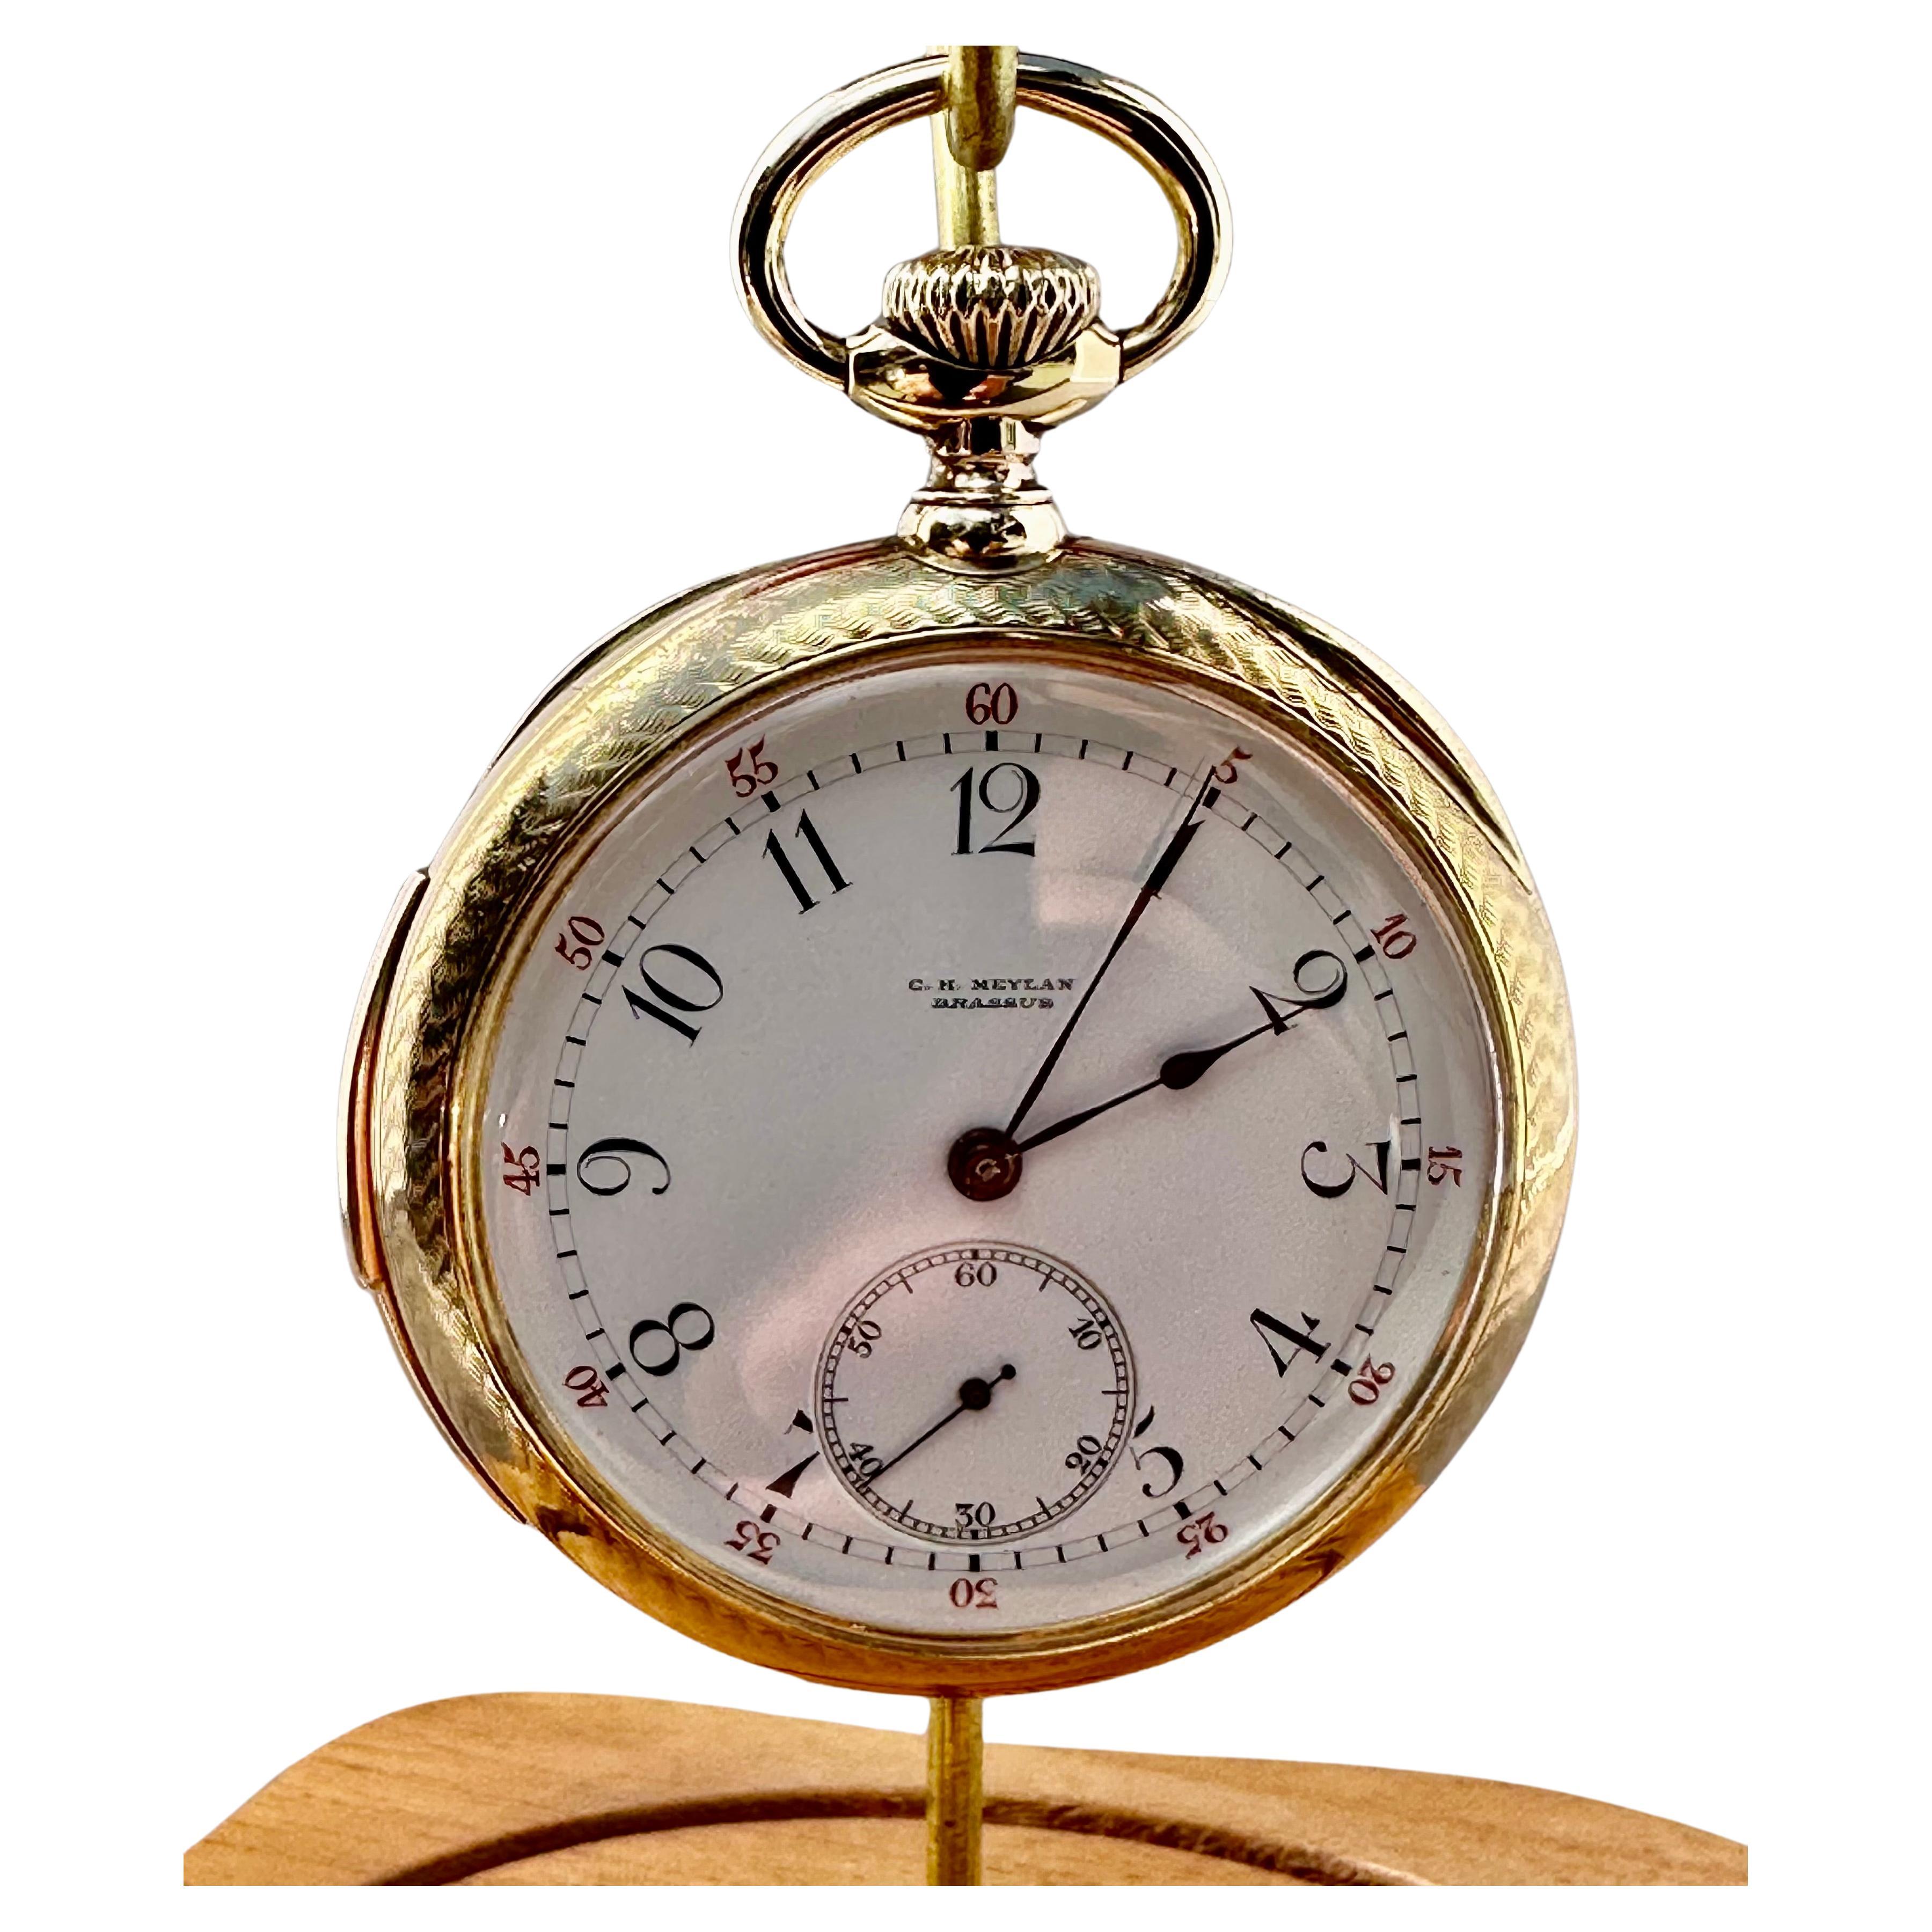 C.H. Meylan 18K Gold Keyless Lever Minute Repeater Taschenuhr Circa 1890er Jahre